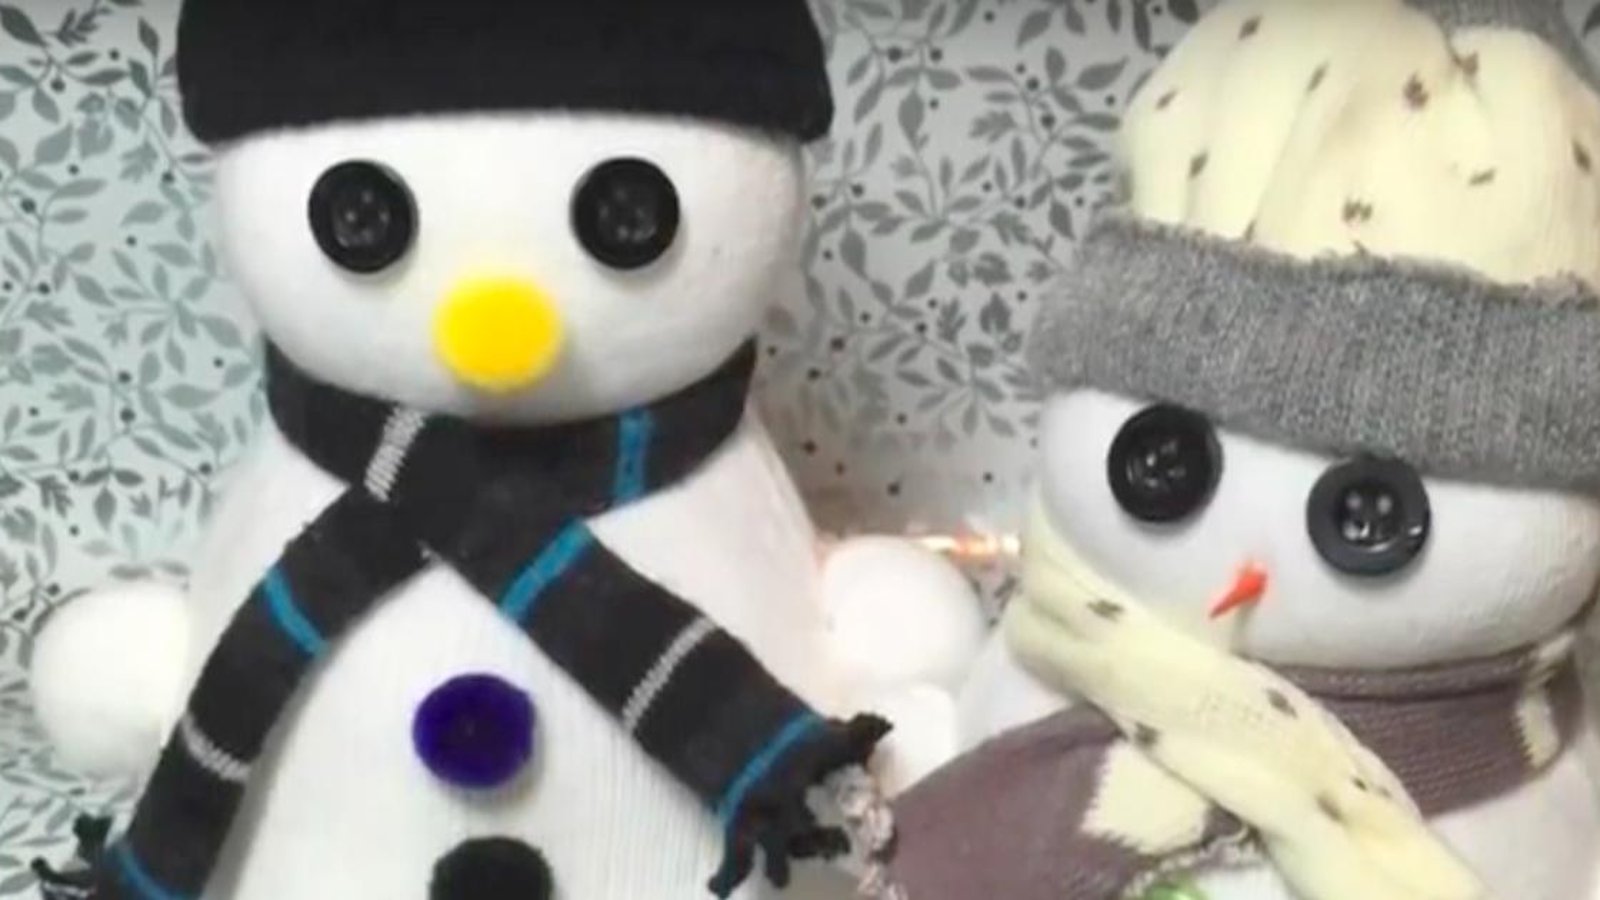 Bricolage hivernal: Comment fabriquer de mignons bonshommes de neige avec des chaussettes